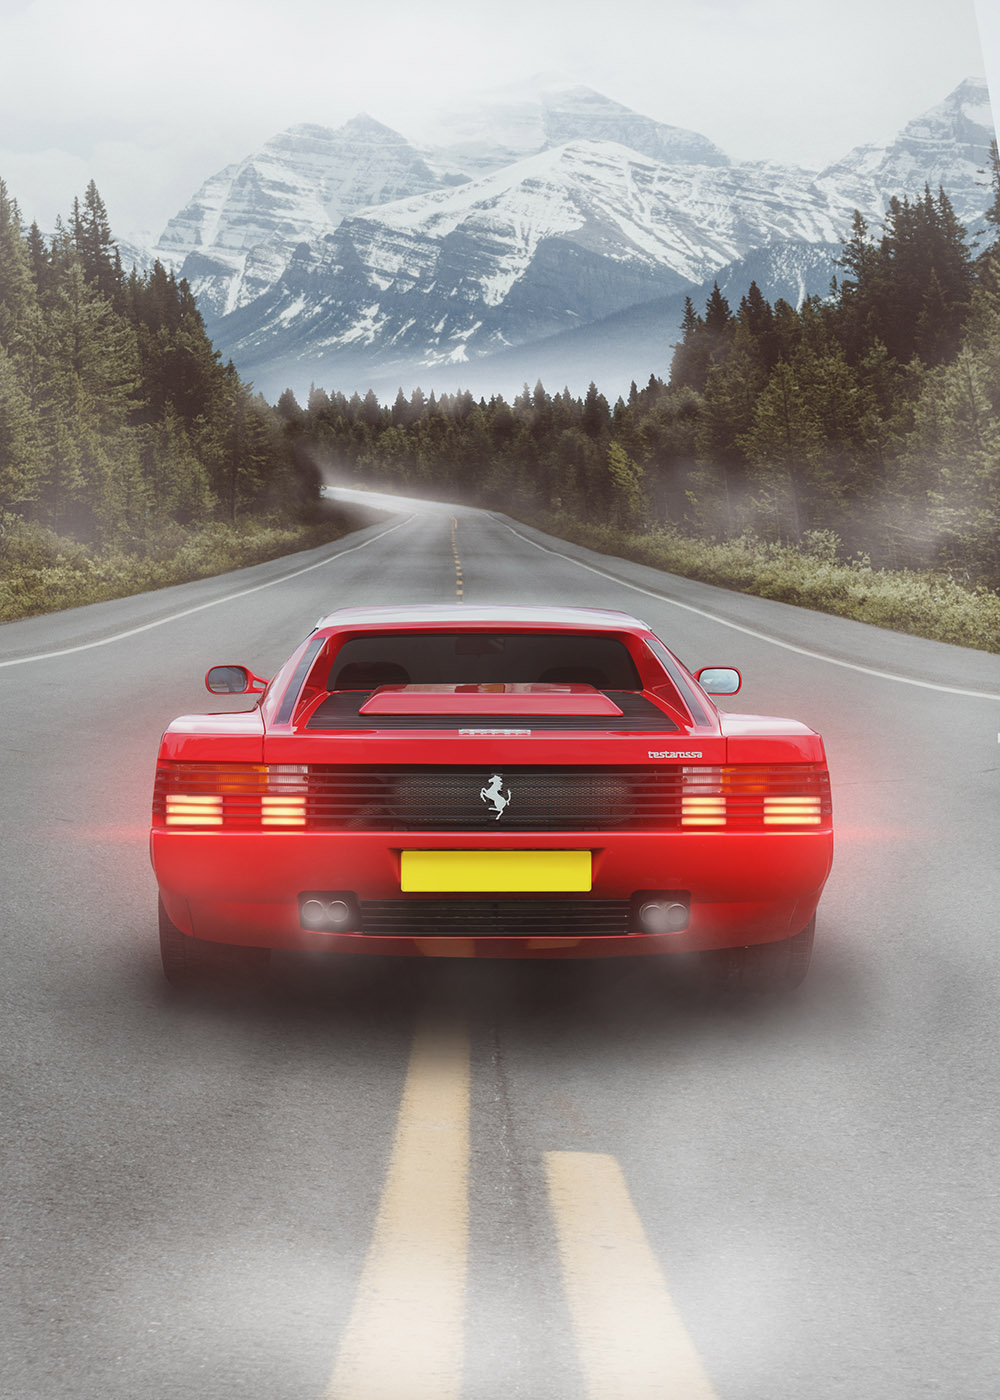 Ferrari Testarossa Photorealistic